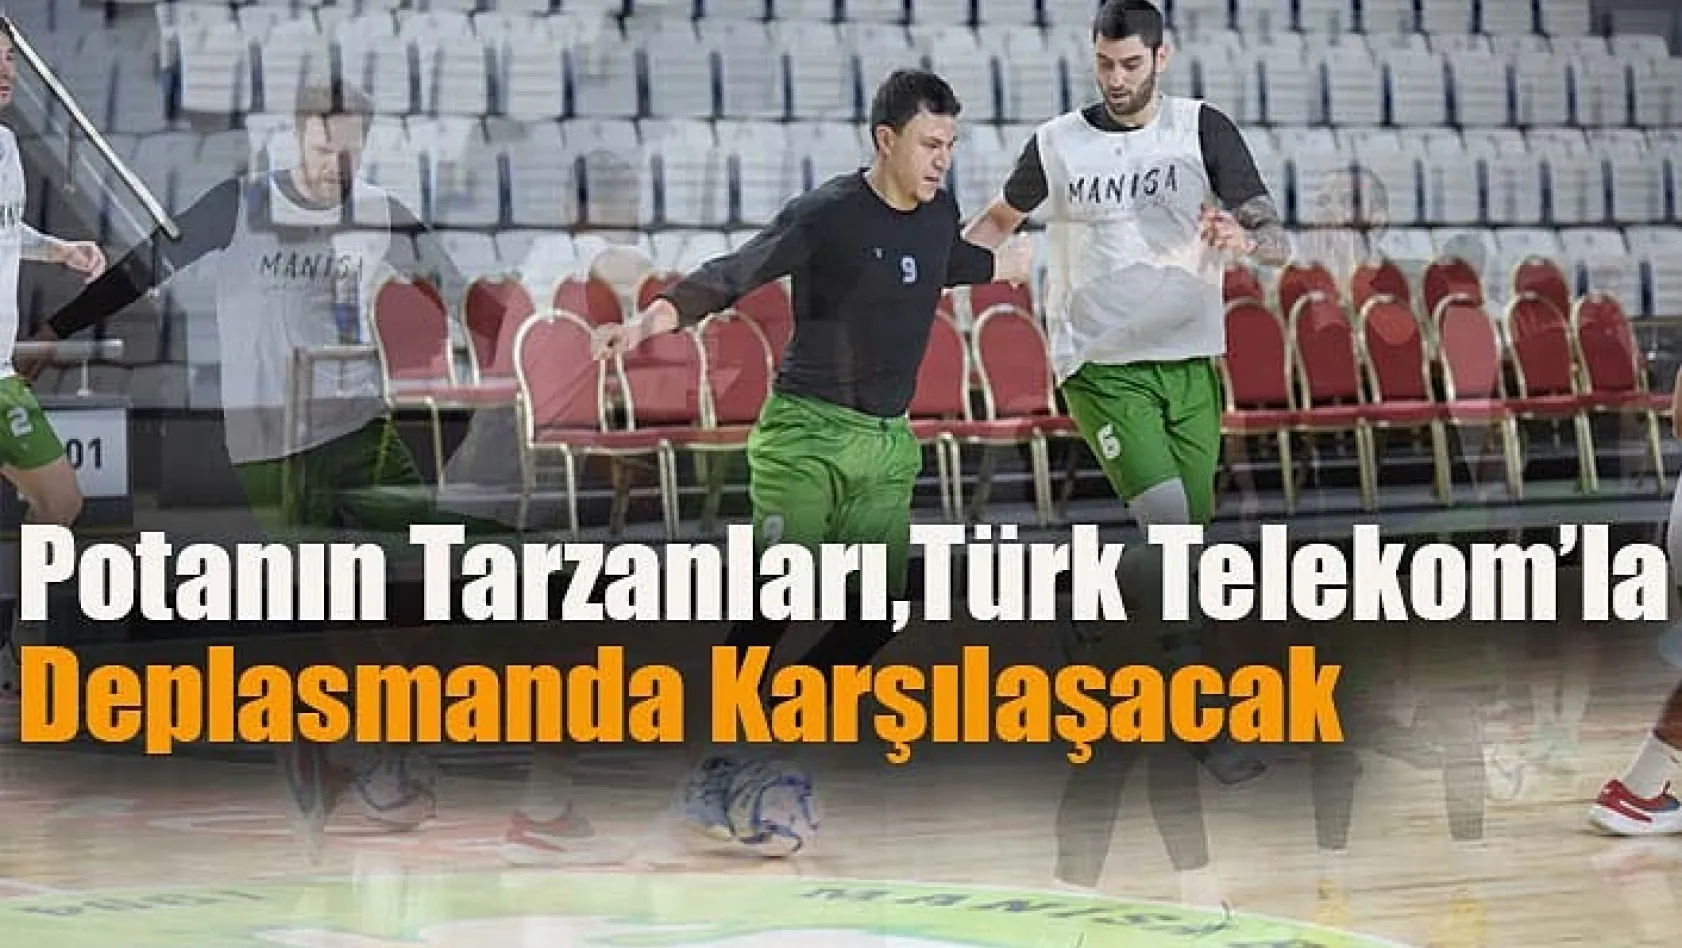 Potanın Tarzanları, Türk Telekom'la Deplasmanda Karşılaşacak